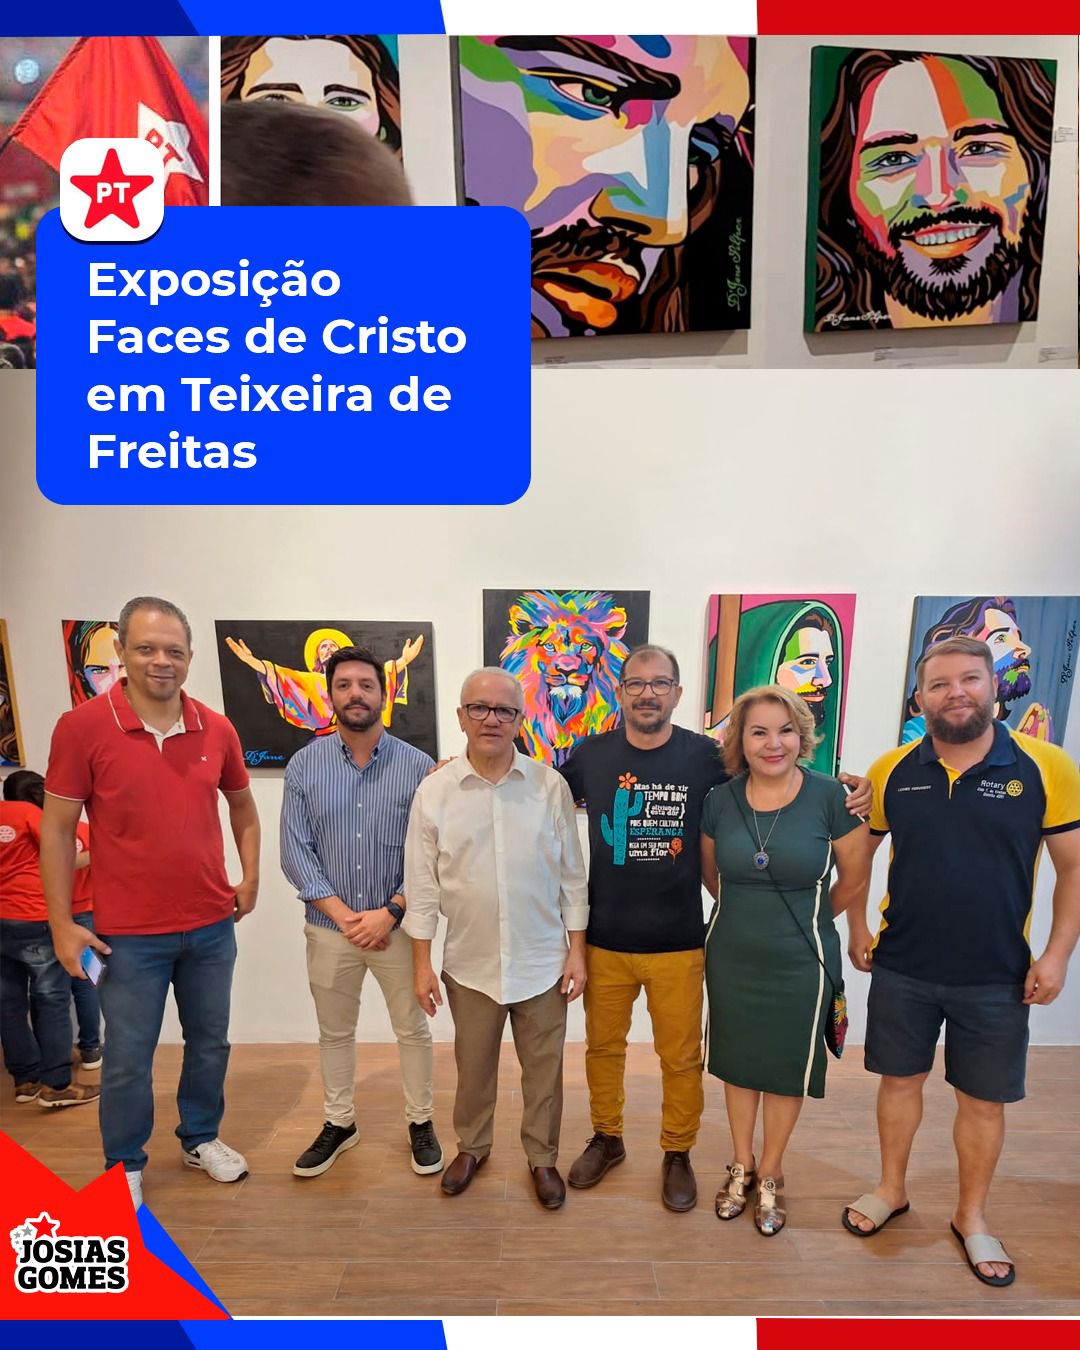 Noite Sensacional Em Teixeira De Freitas: Exposição “Faces De Cristo”